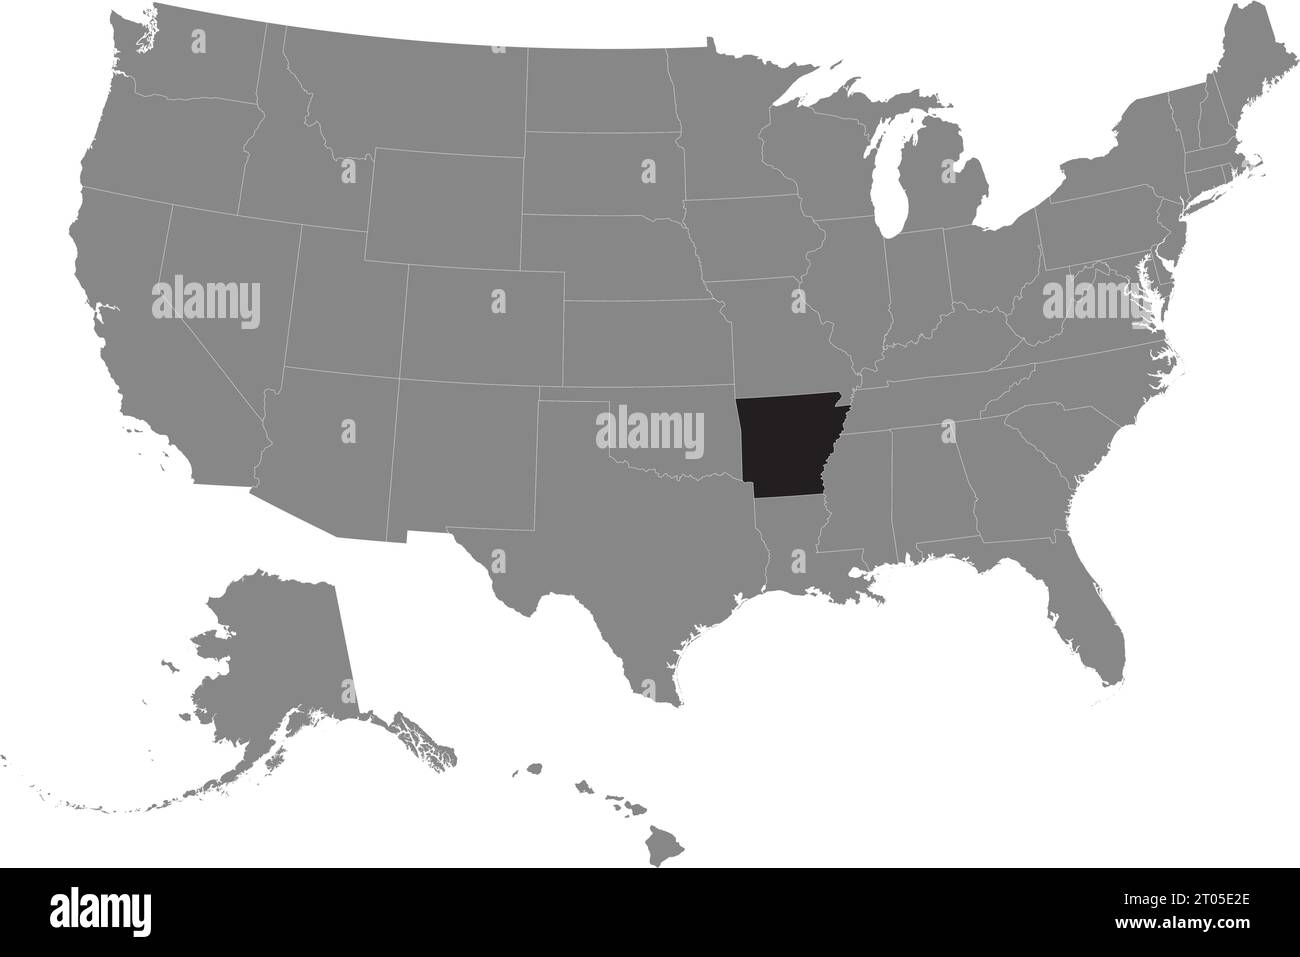 Schwarze CMYK-Bundeskarte von ARKANSAS in detaillierter grauer, leerer politischer Karte der Vereinigten Staaten von Amerika auf transparentem Hintergrund Stock Vektor